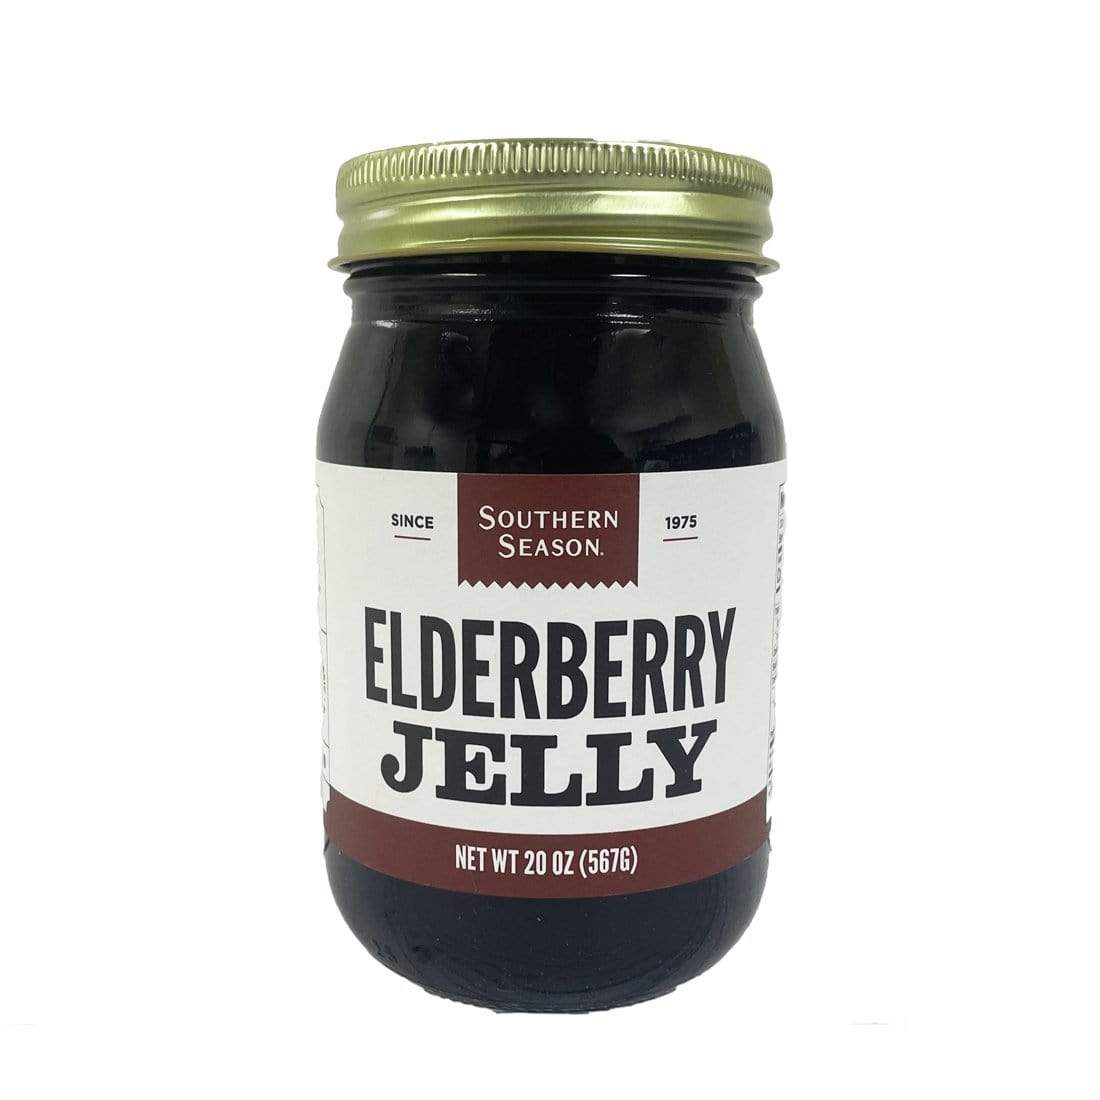 Southern Season Southern Season Elderberry Jelly 20 oz